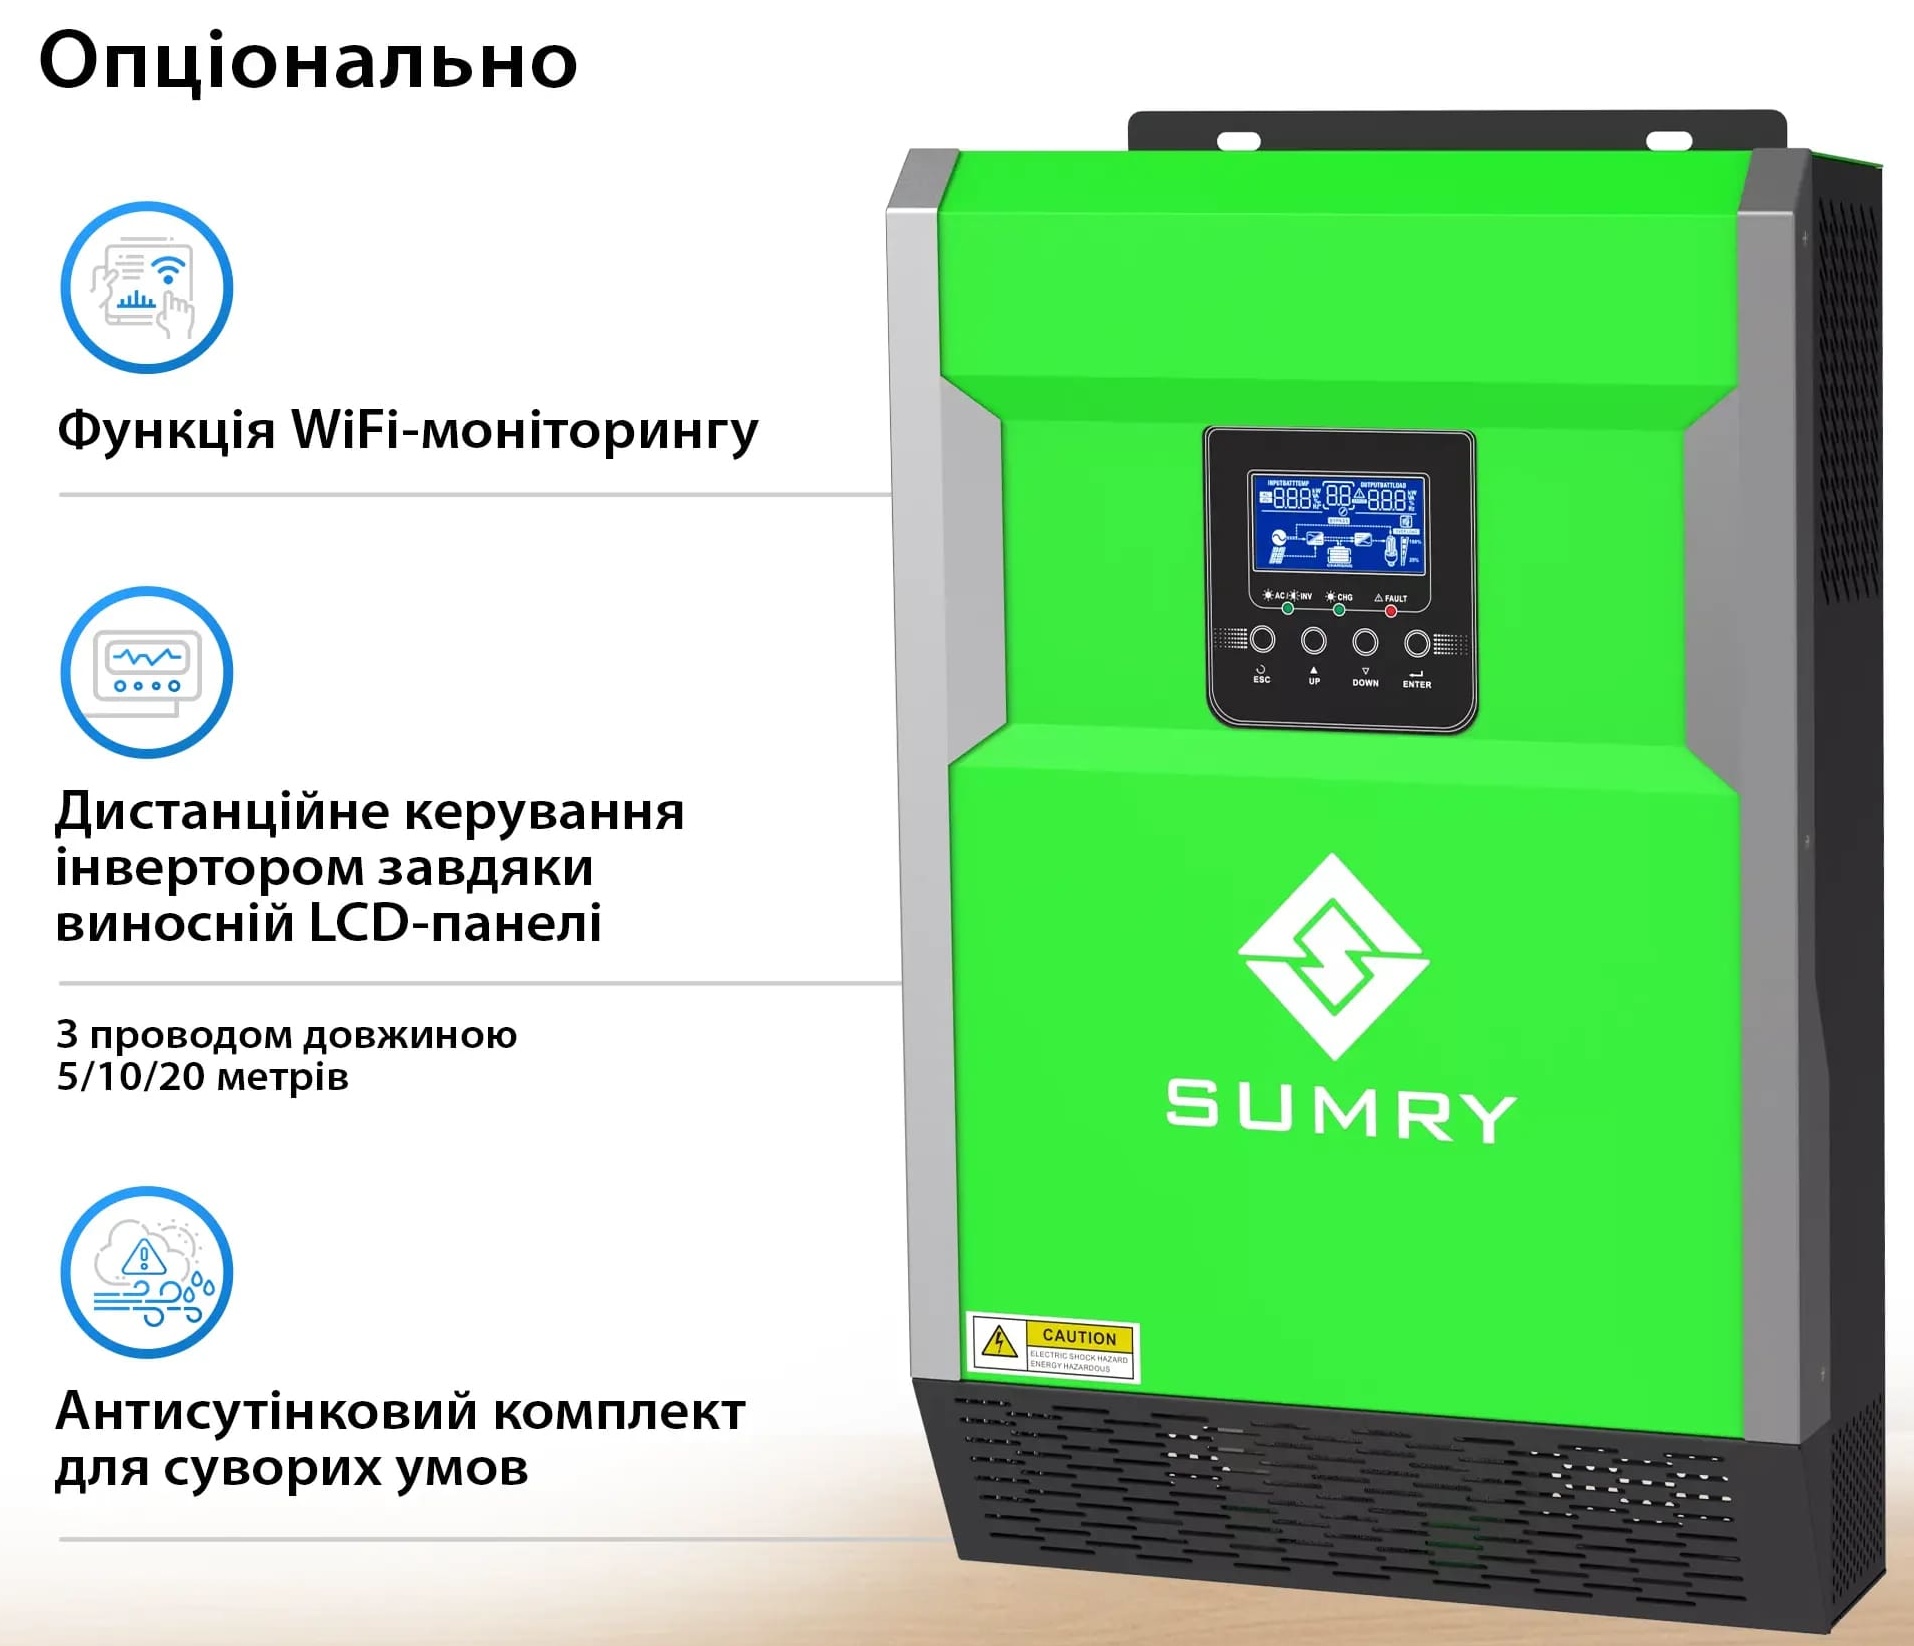 продаём Sumry HGP-5500W в Украине - фото 4